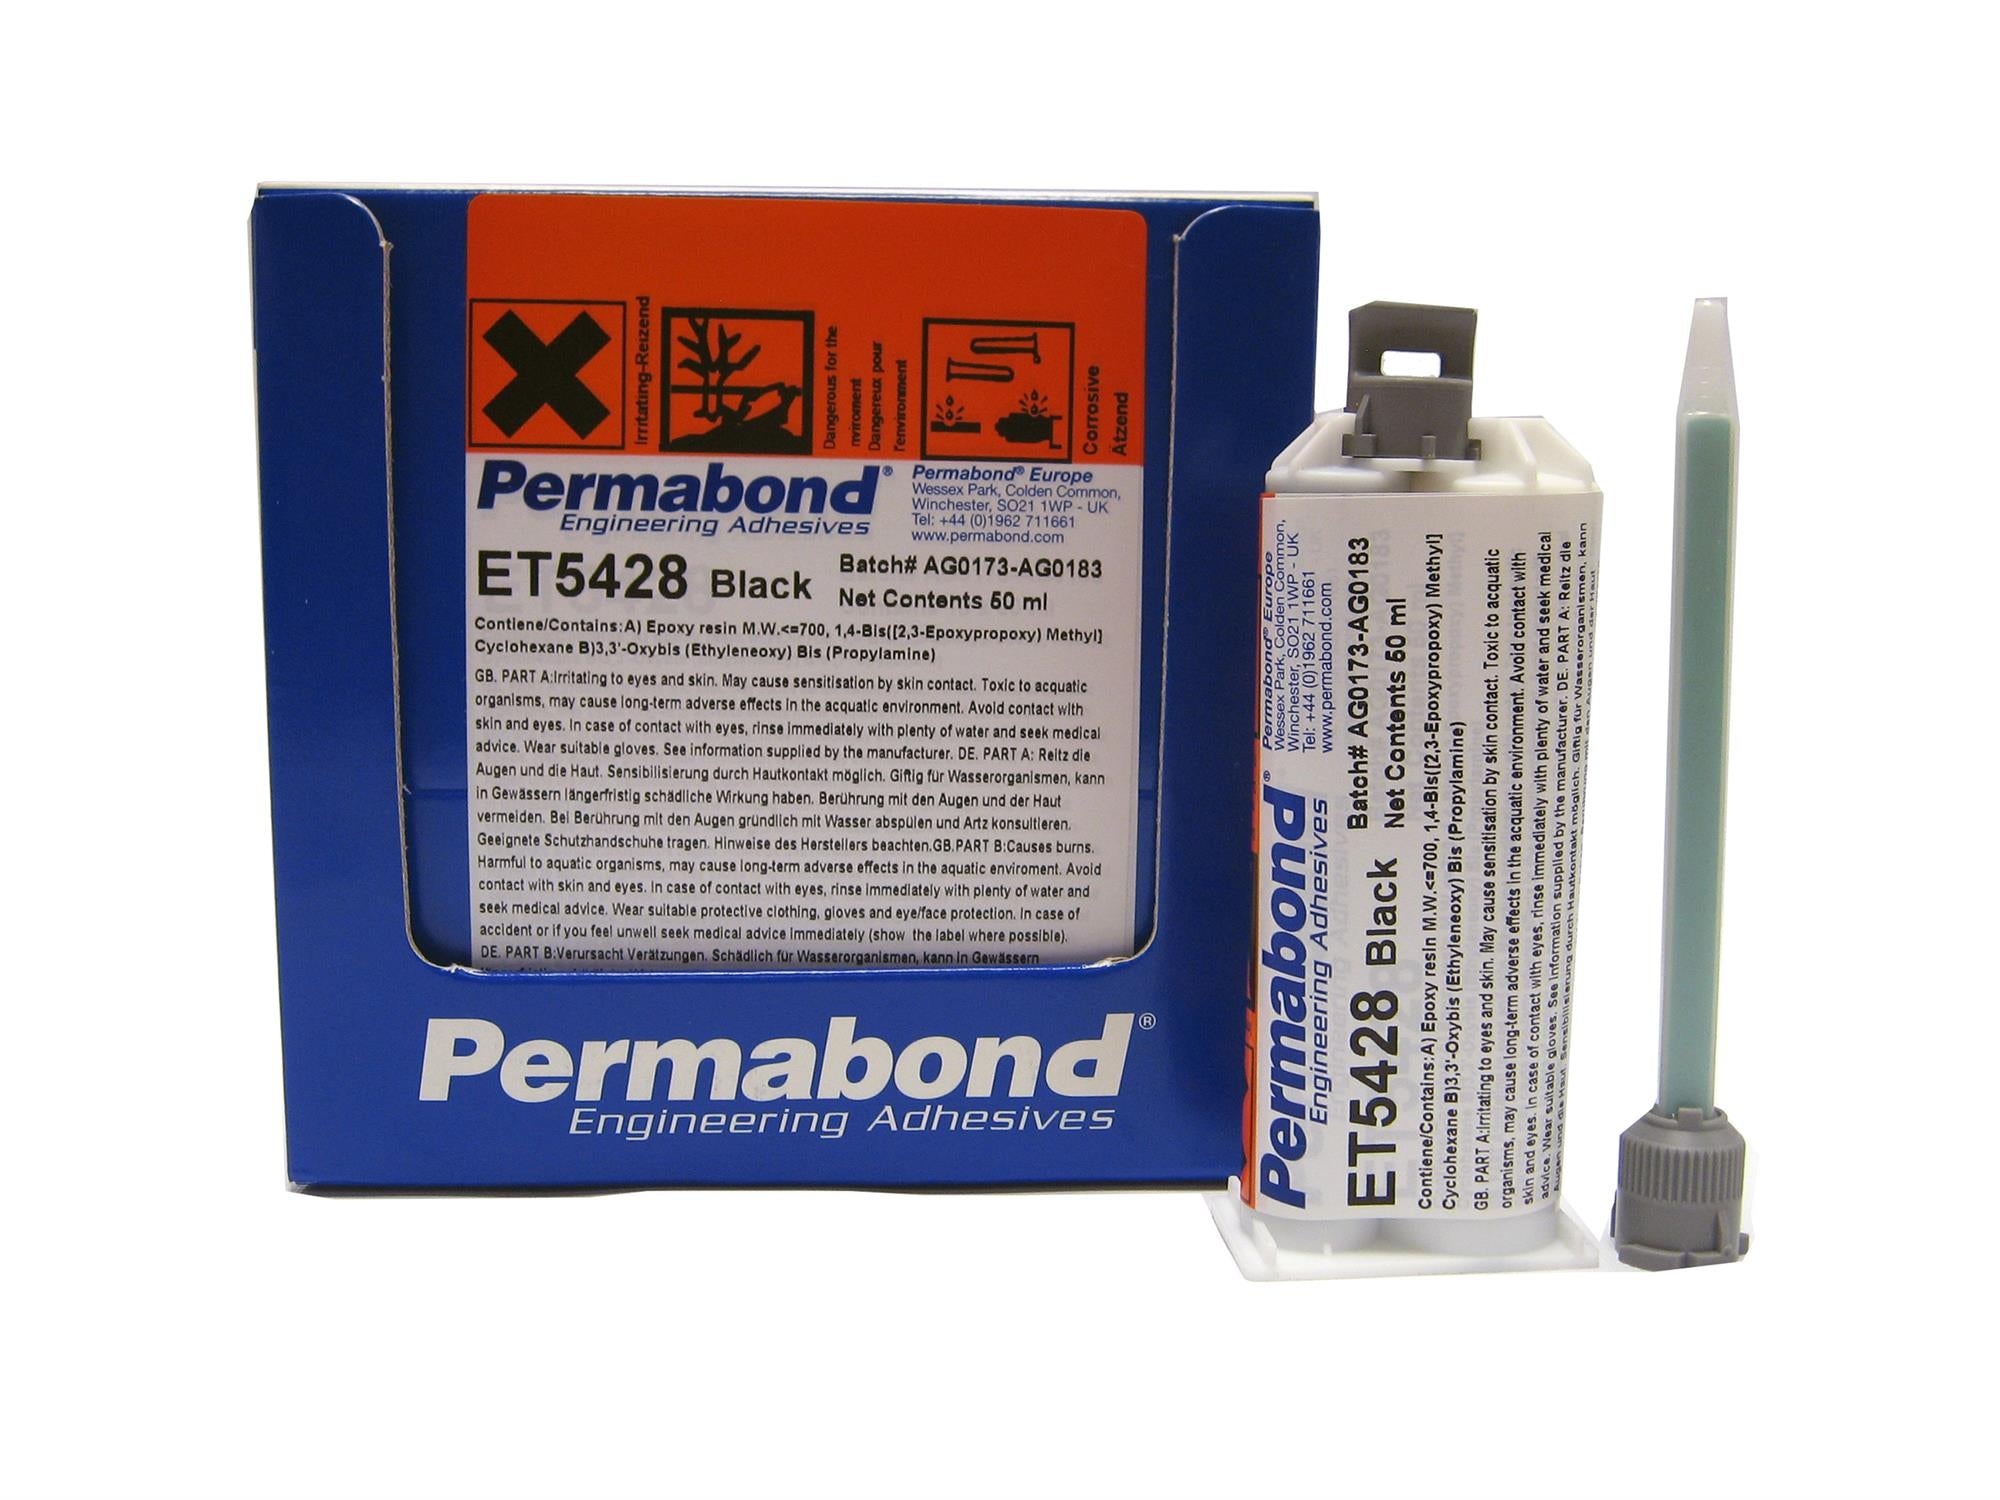 Permabond thixotropic 2-part epoxy 2:1 adhesive #ET5428